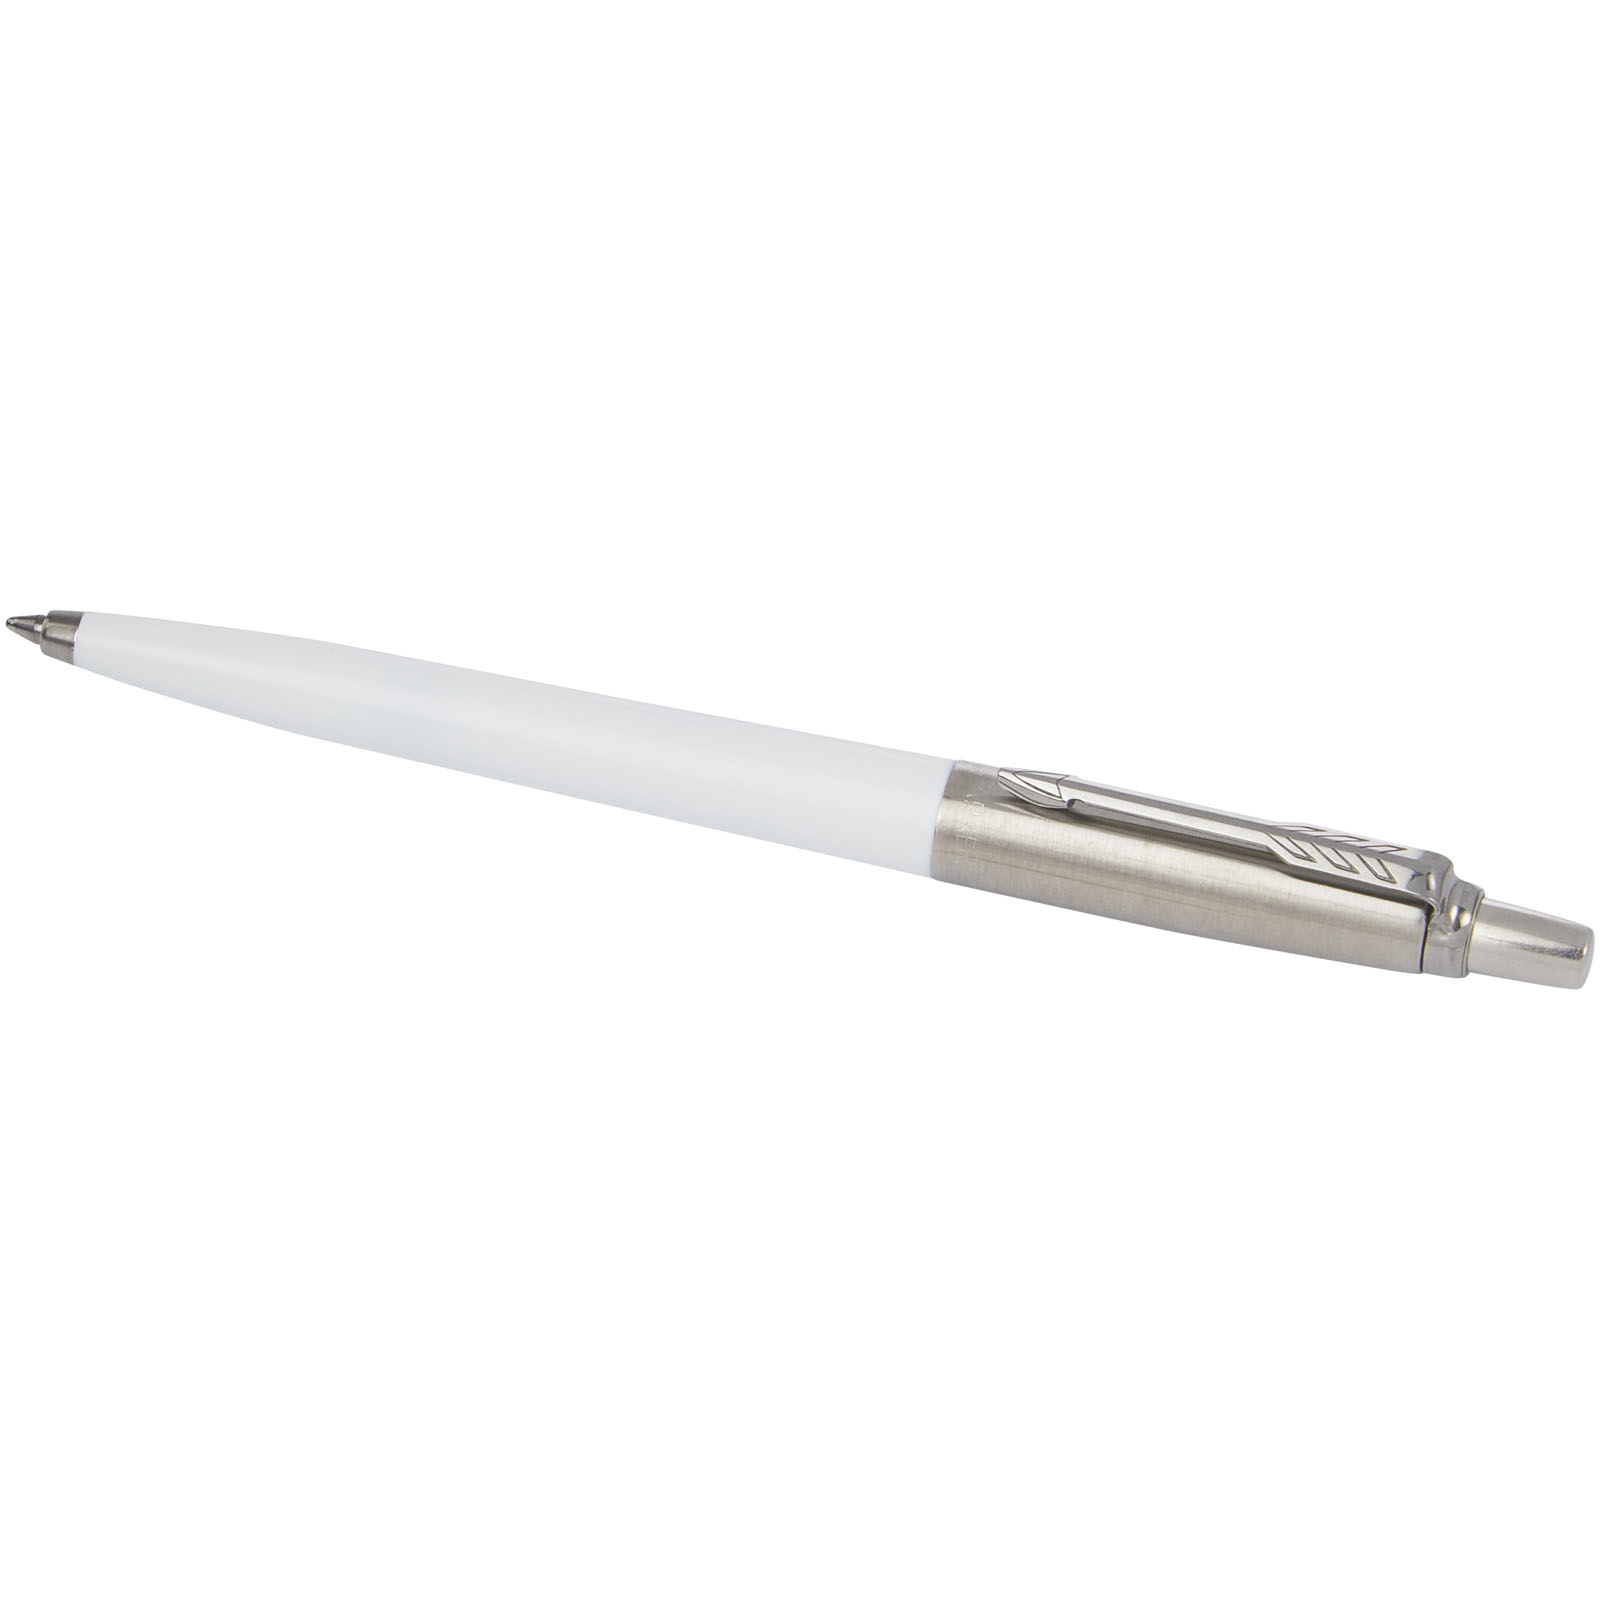 Advertising Ballpoint Pens - Parker Jotter Recycled ballpoint pen - 4